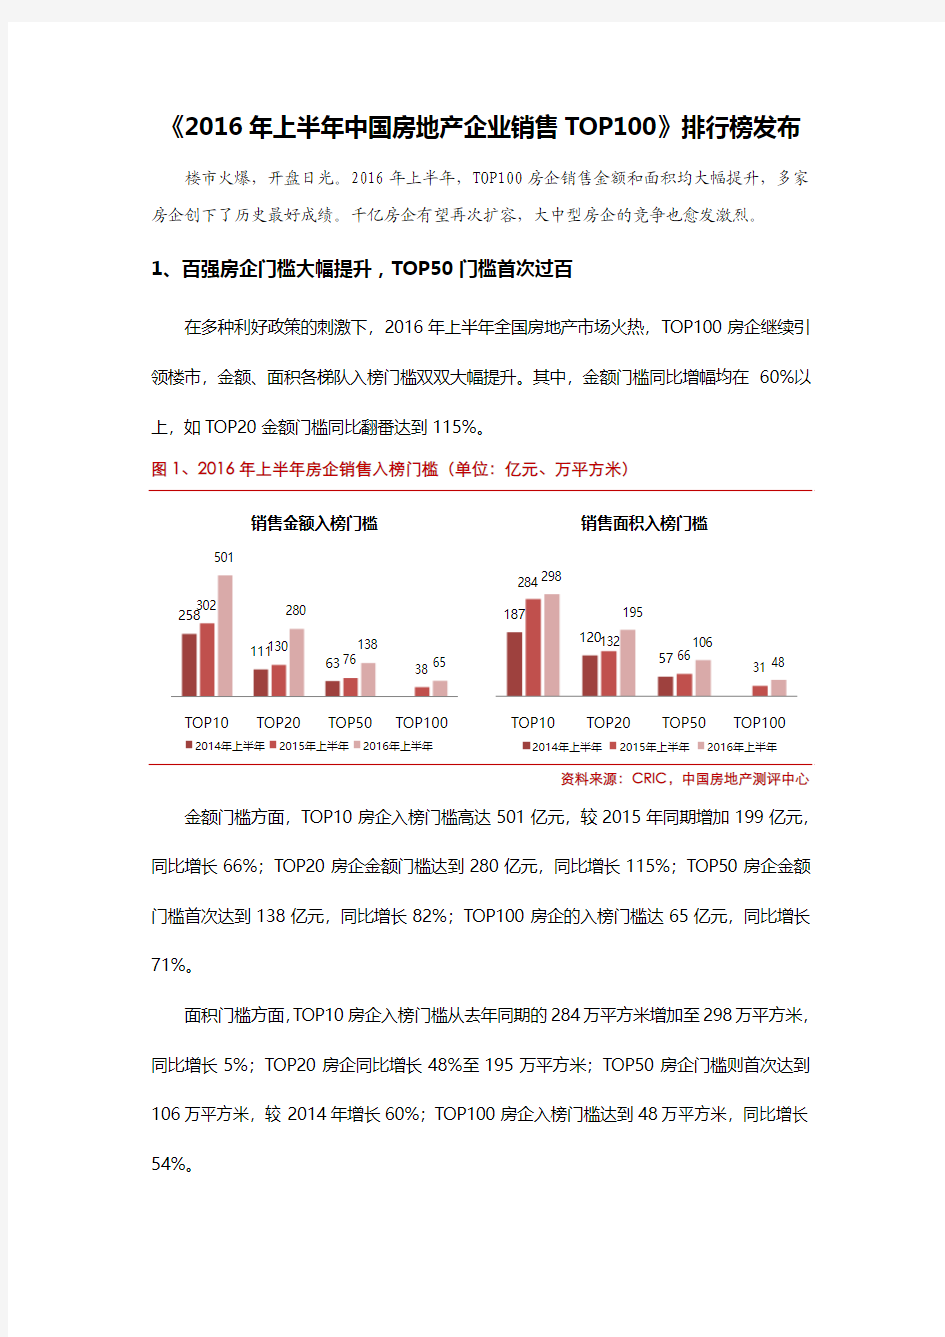 《2016年上半年中国房地产企业销售TOP100》排行榜发布V1